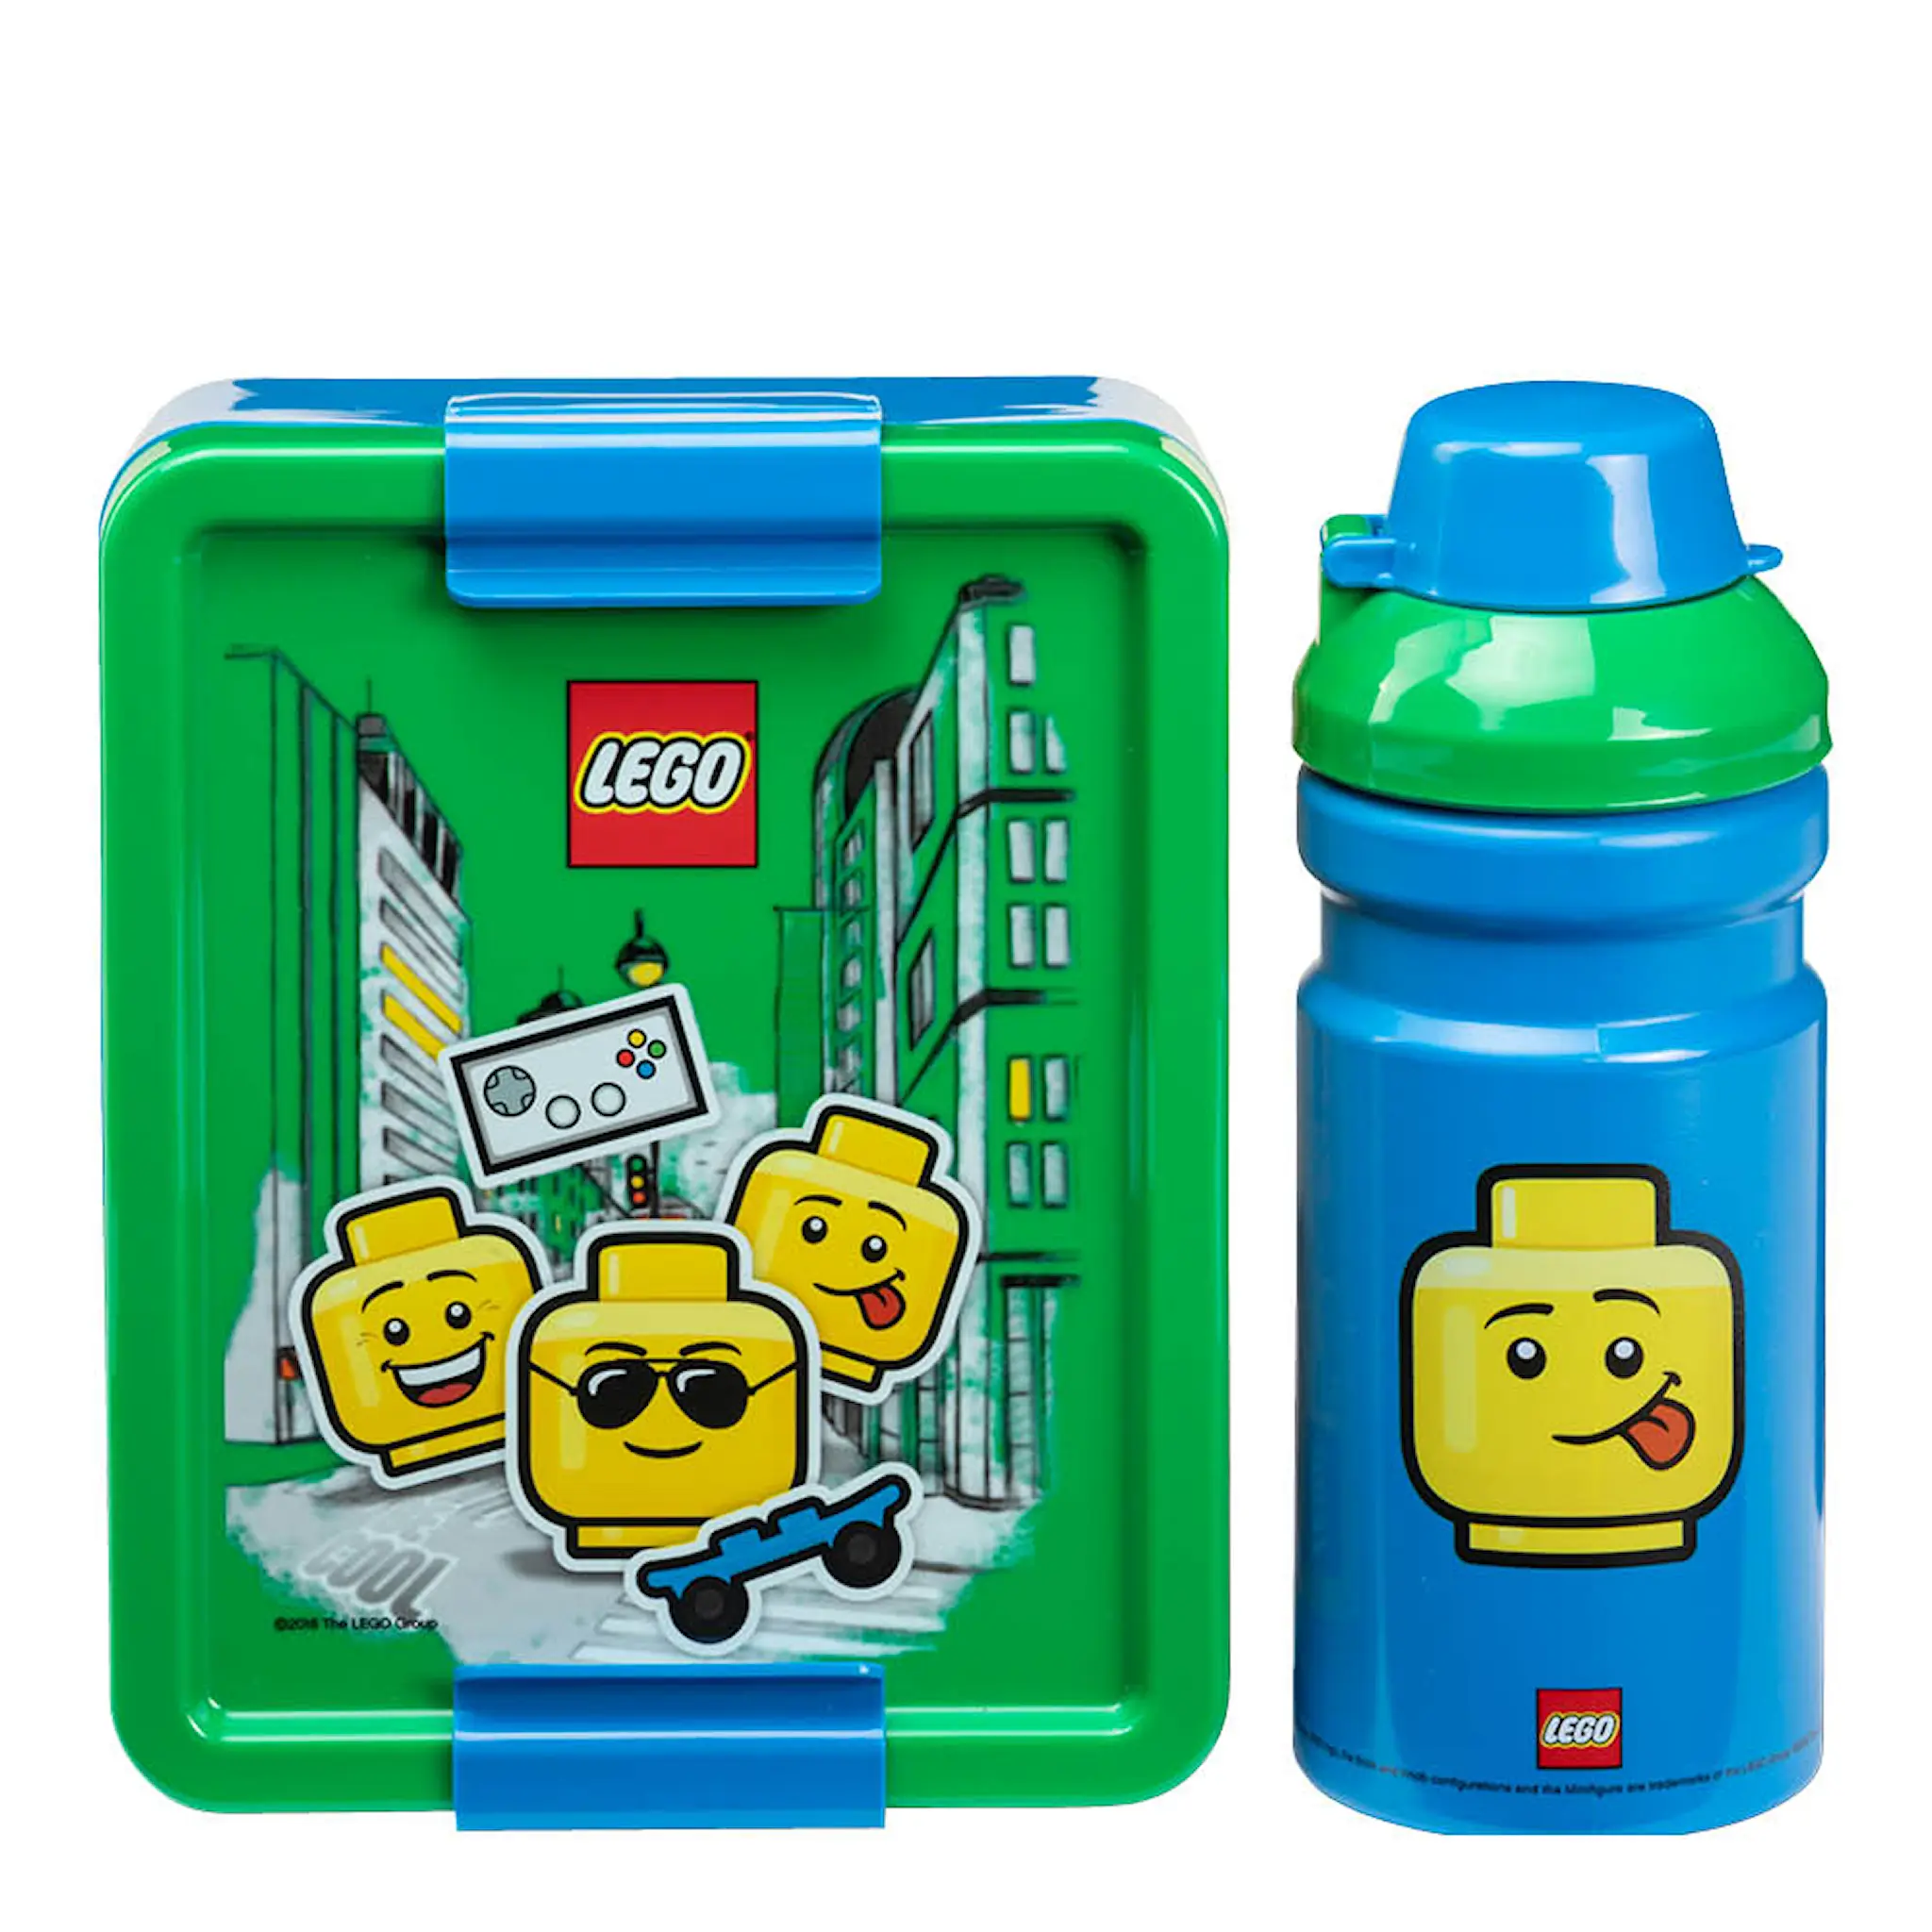 Lego Lunsjsett ikonisk gutt blå/grønn